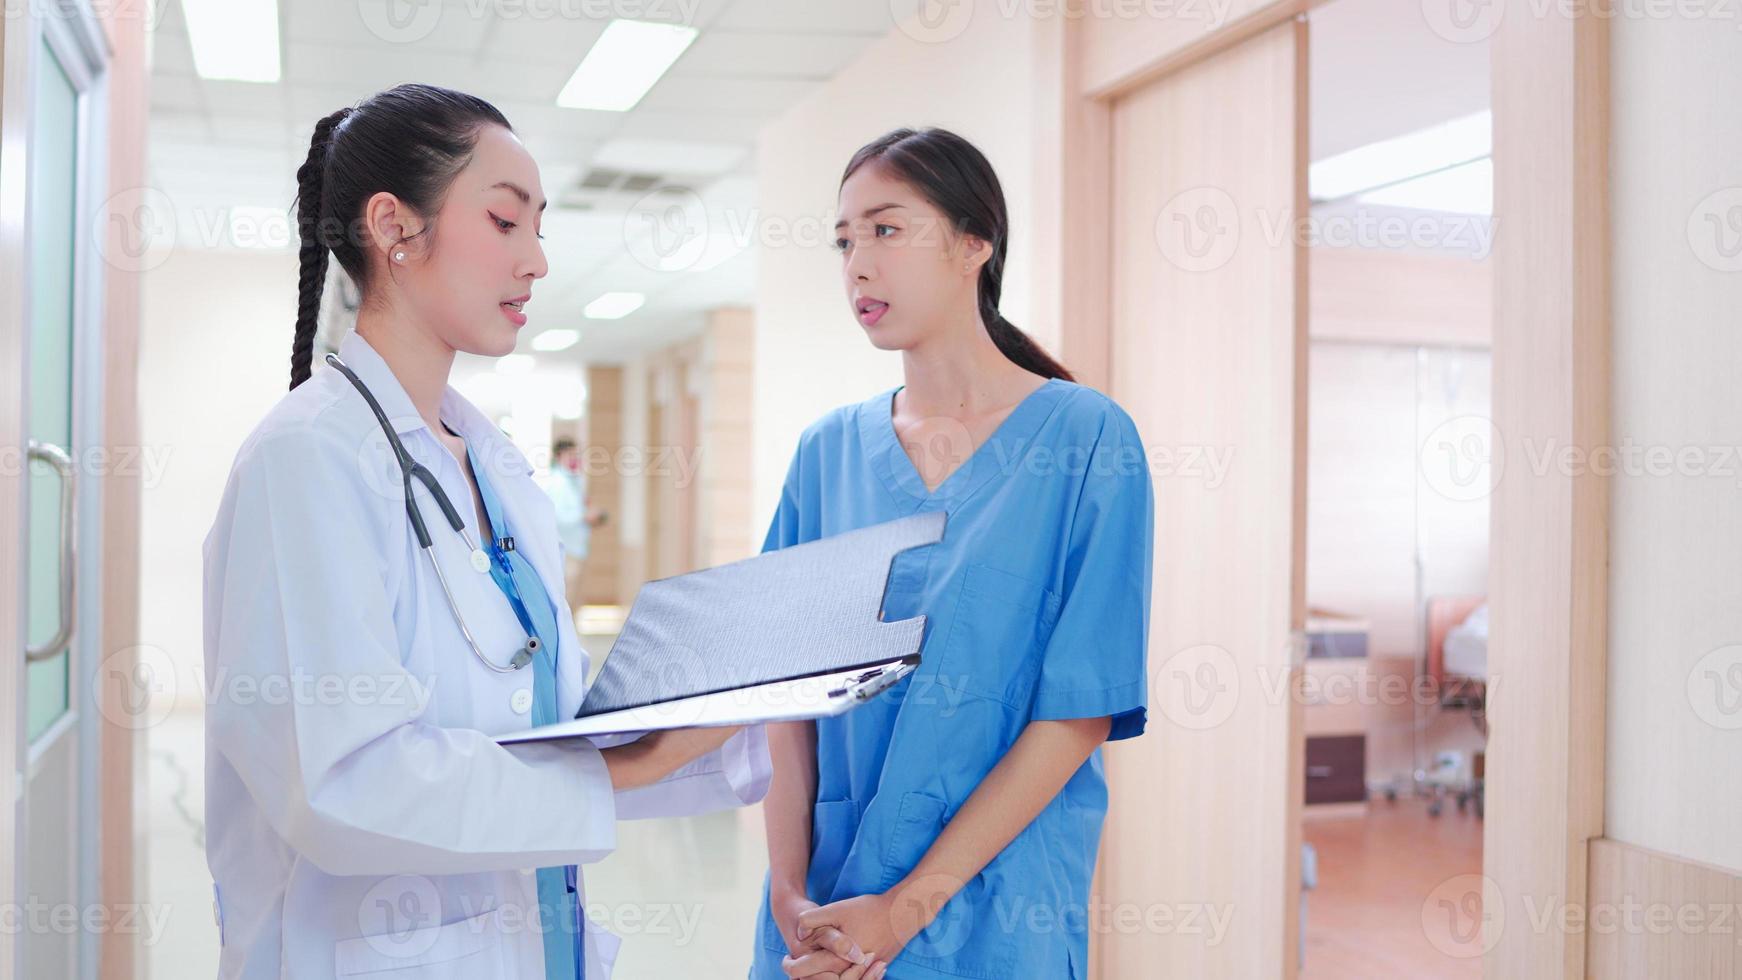 professionele, Aziatische jonge vrouwelijke arts, personeel in uniform staande in ziekenhuisgang. twee collega-werknemers bespreken, werken samen met medisch rapportklembord op de gang van de kliniek. foto